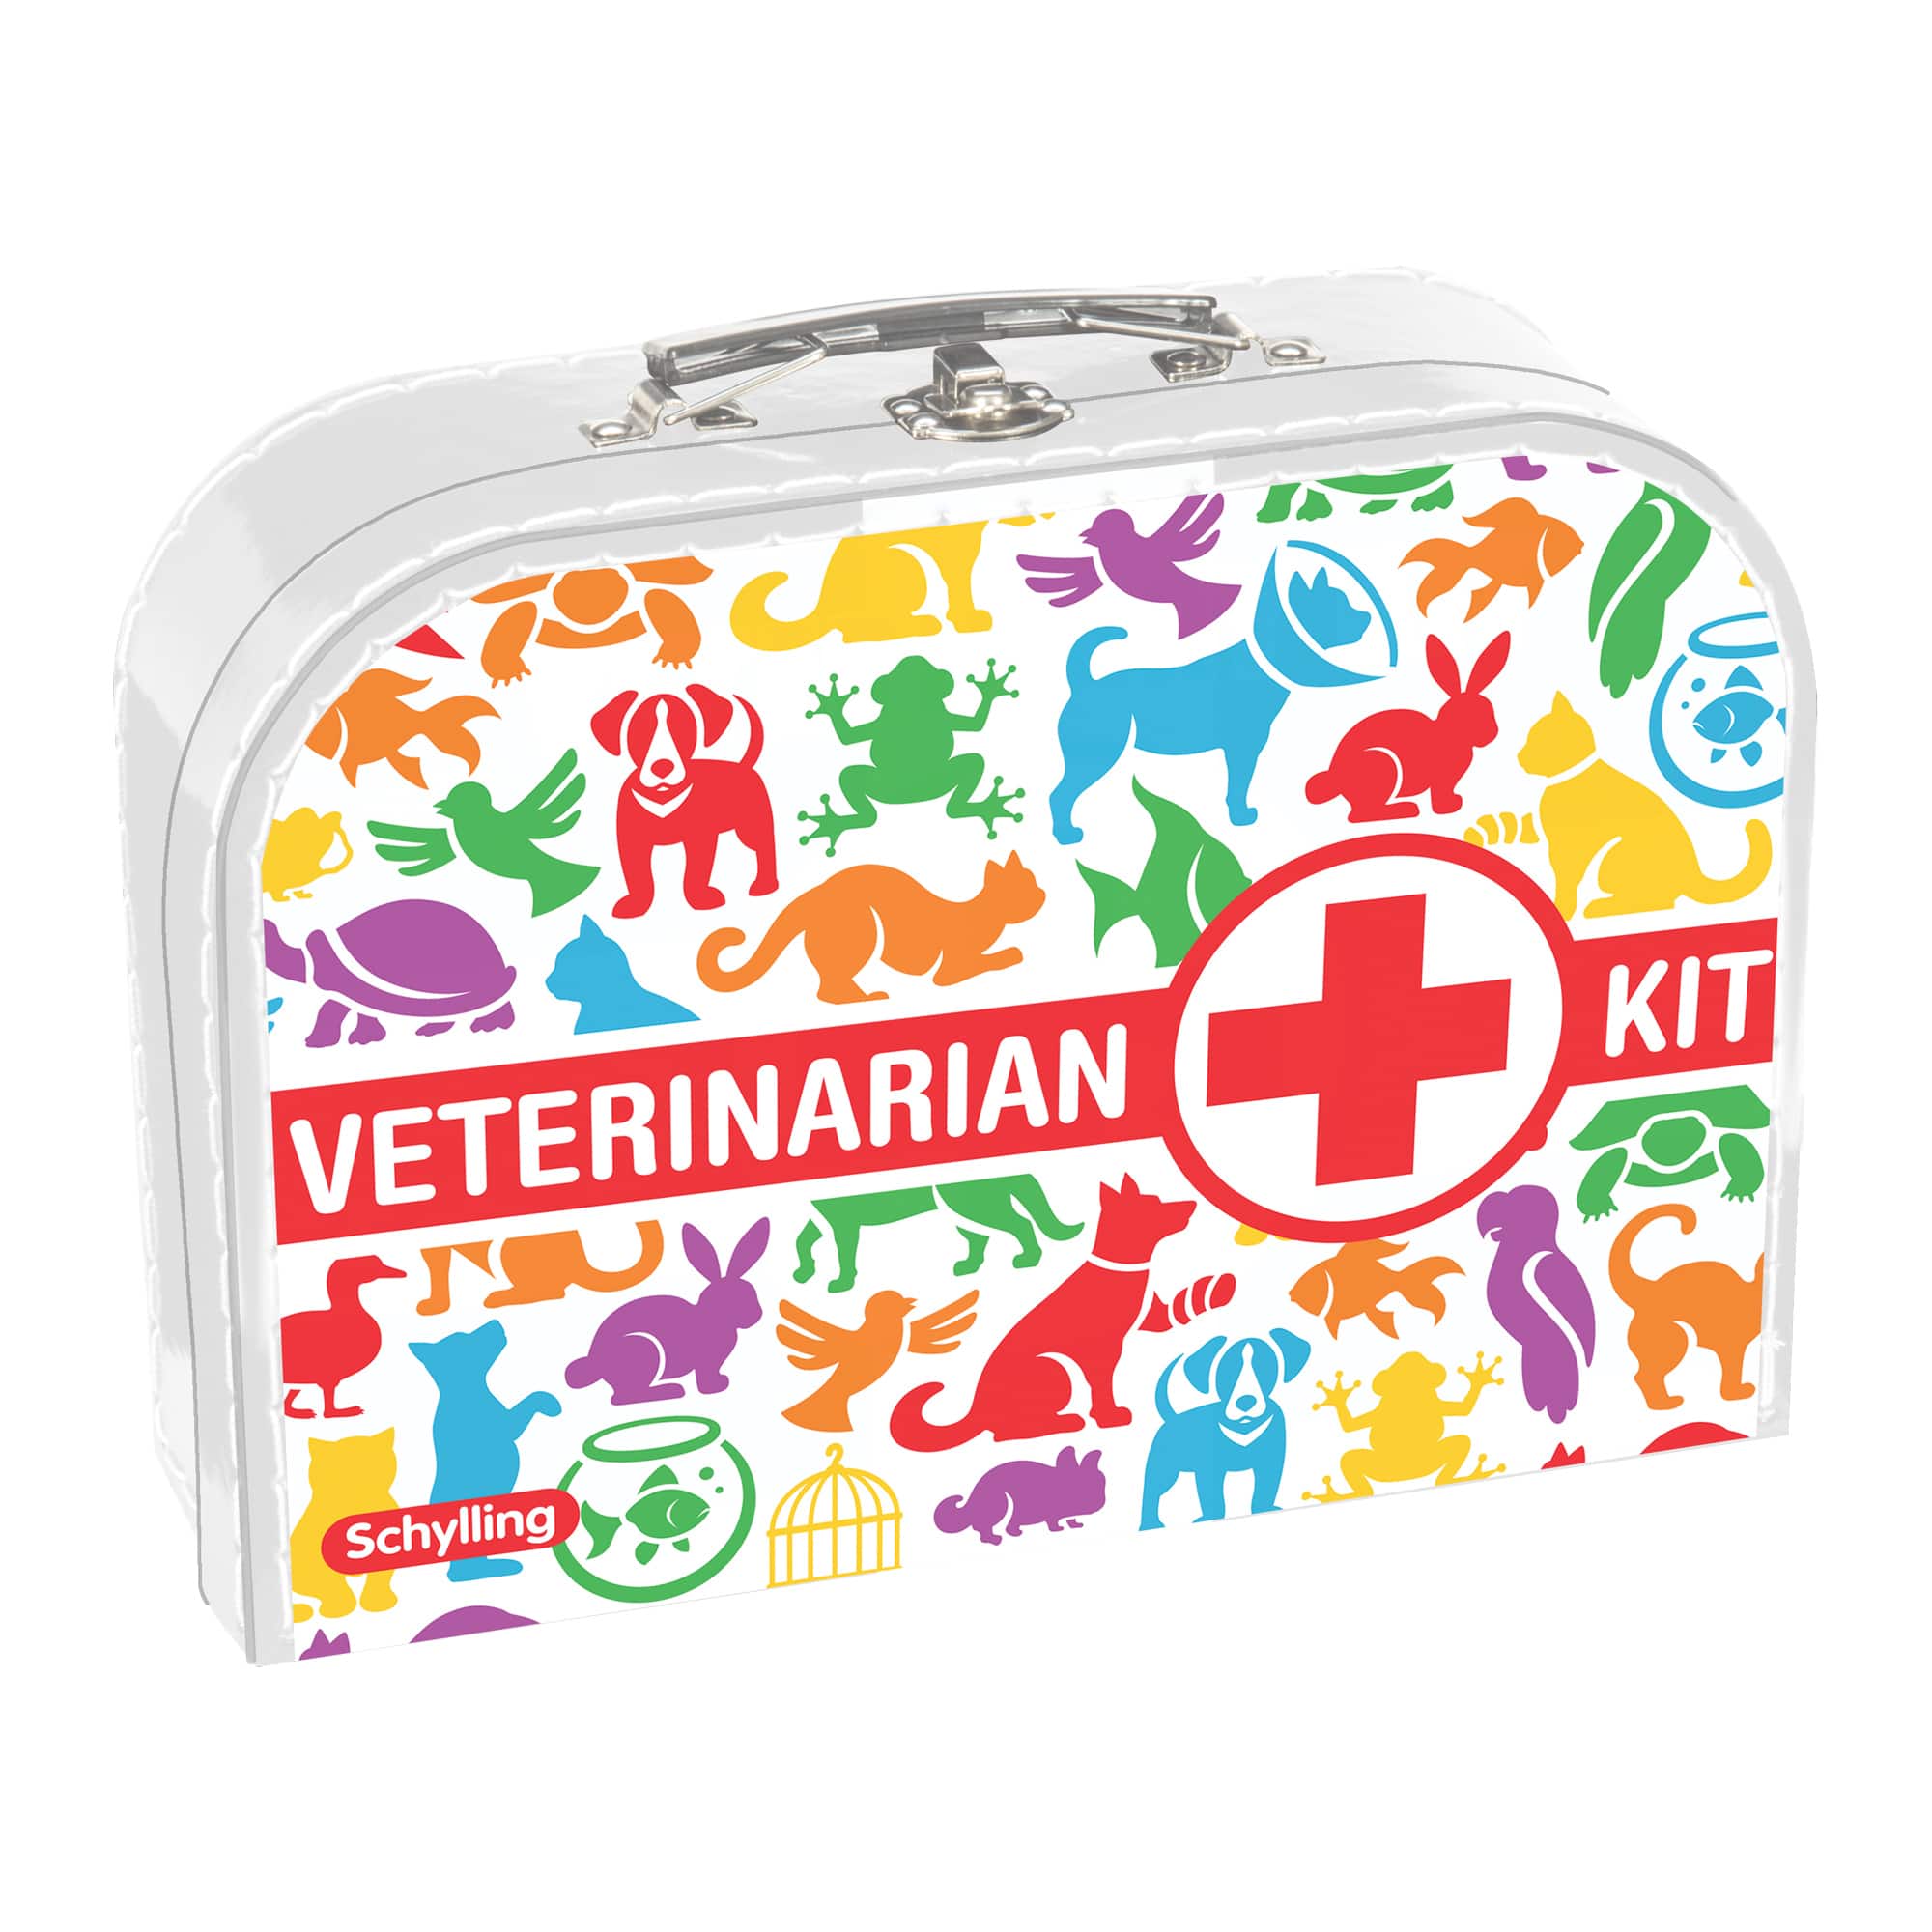 Veterinarian Play Kit for Kids